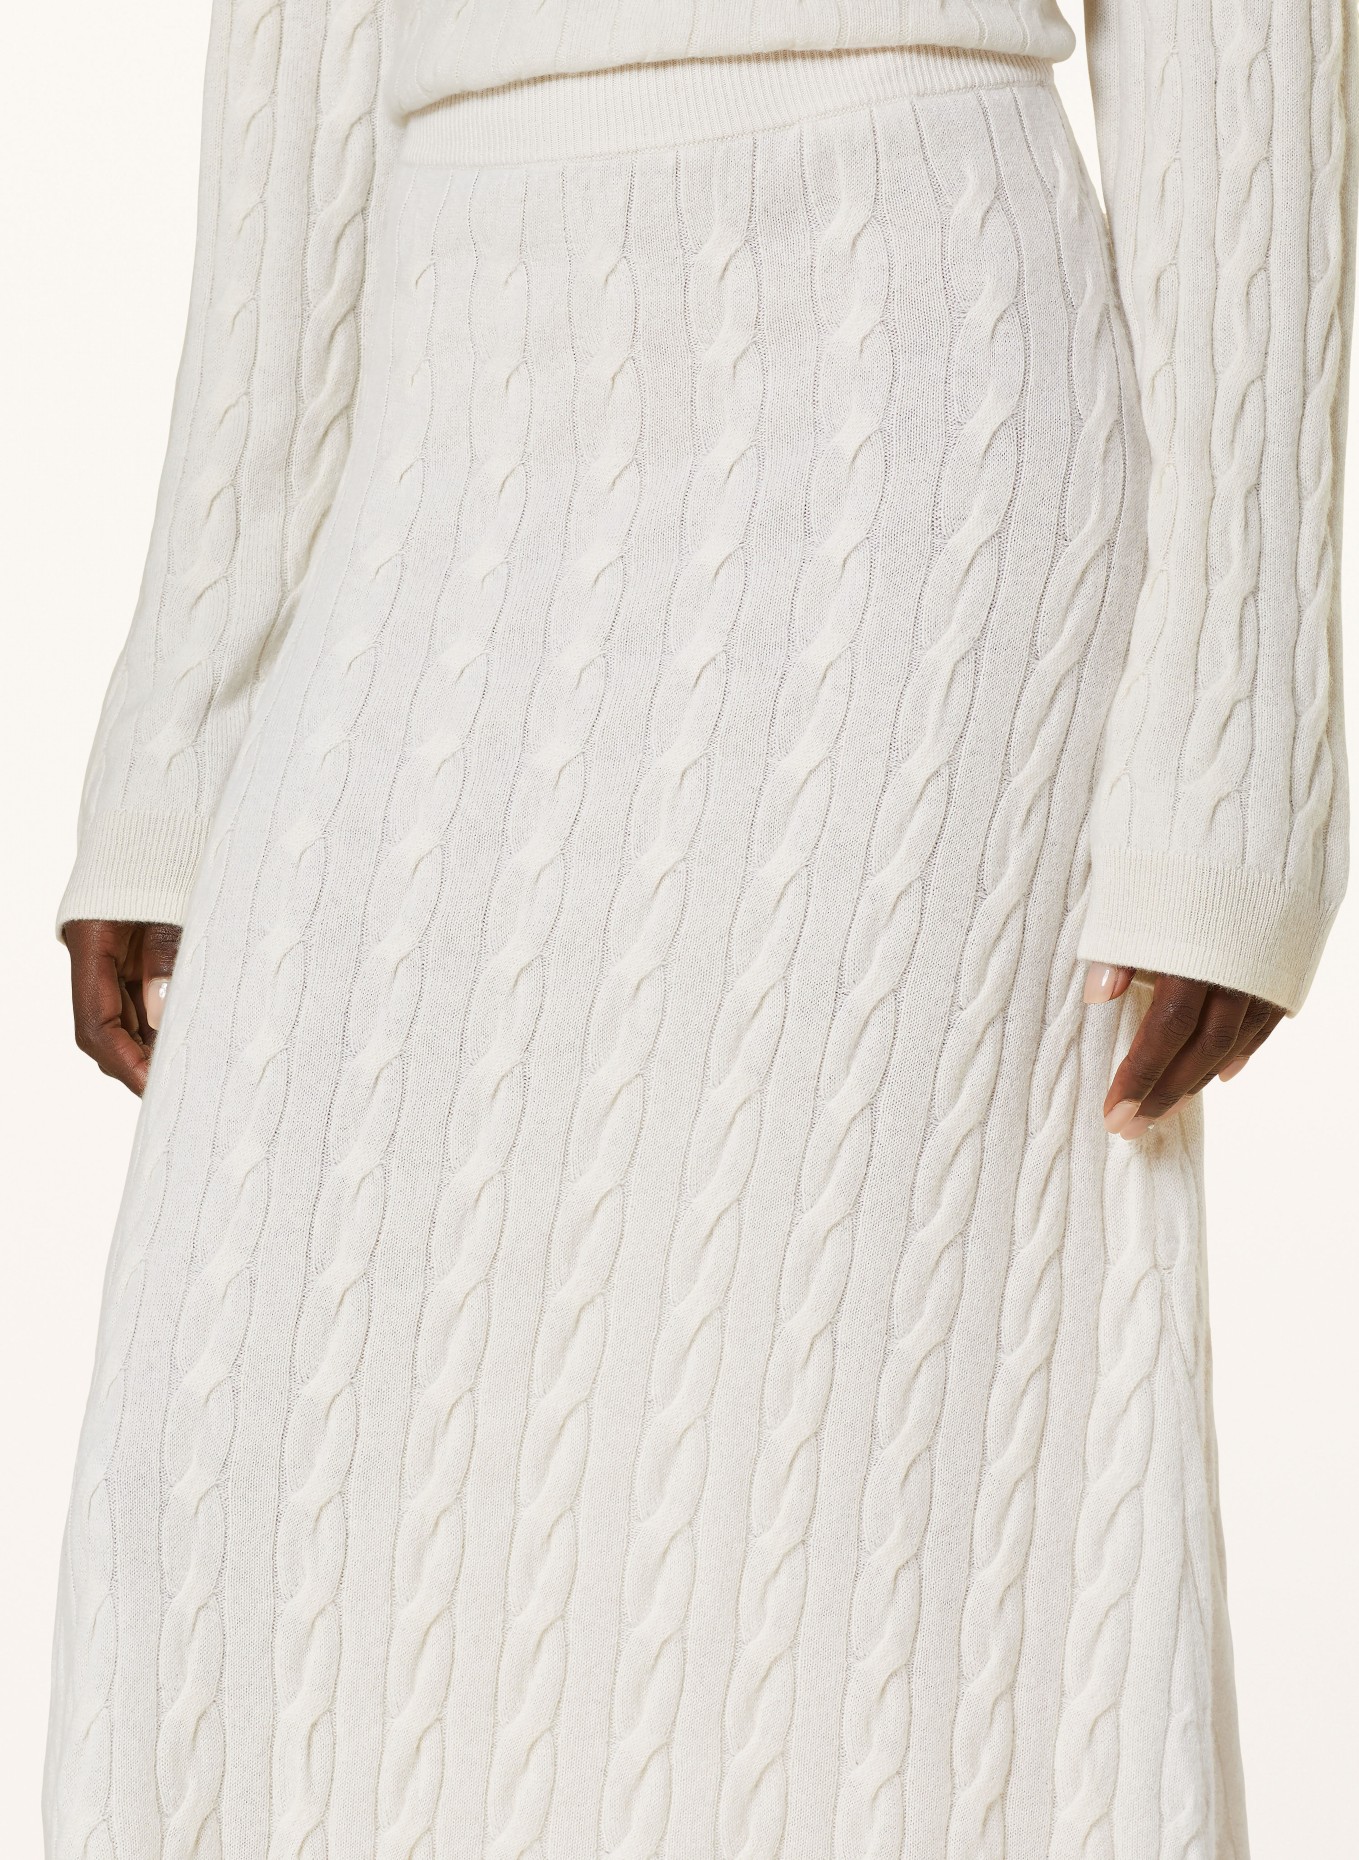 LISA YANG Knit skirt in cashmere, Color: ECRU (Image 4)